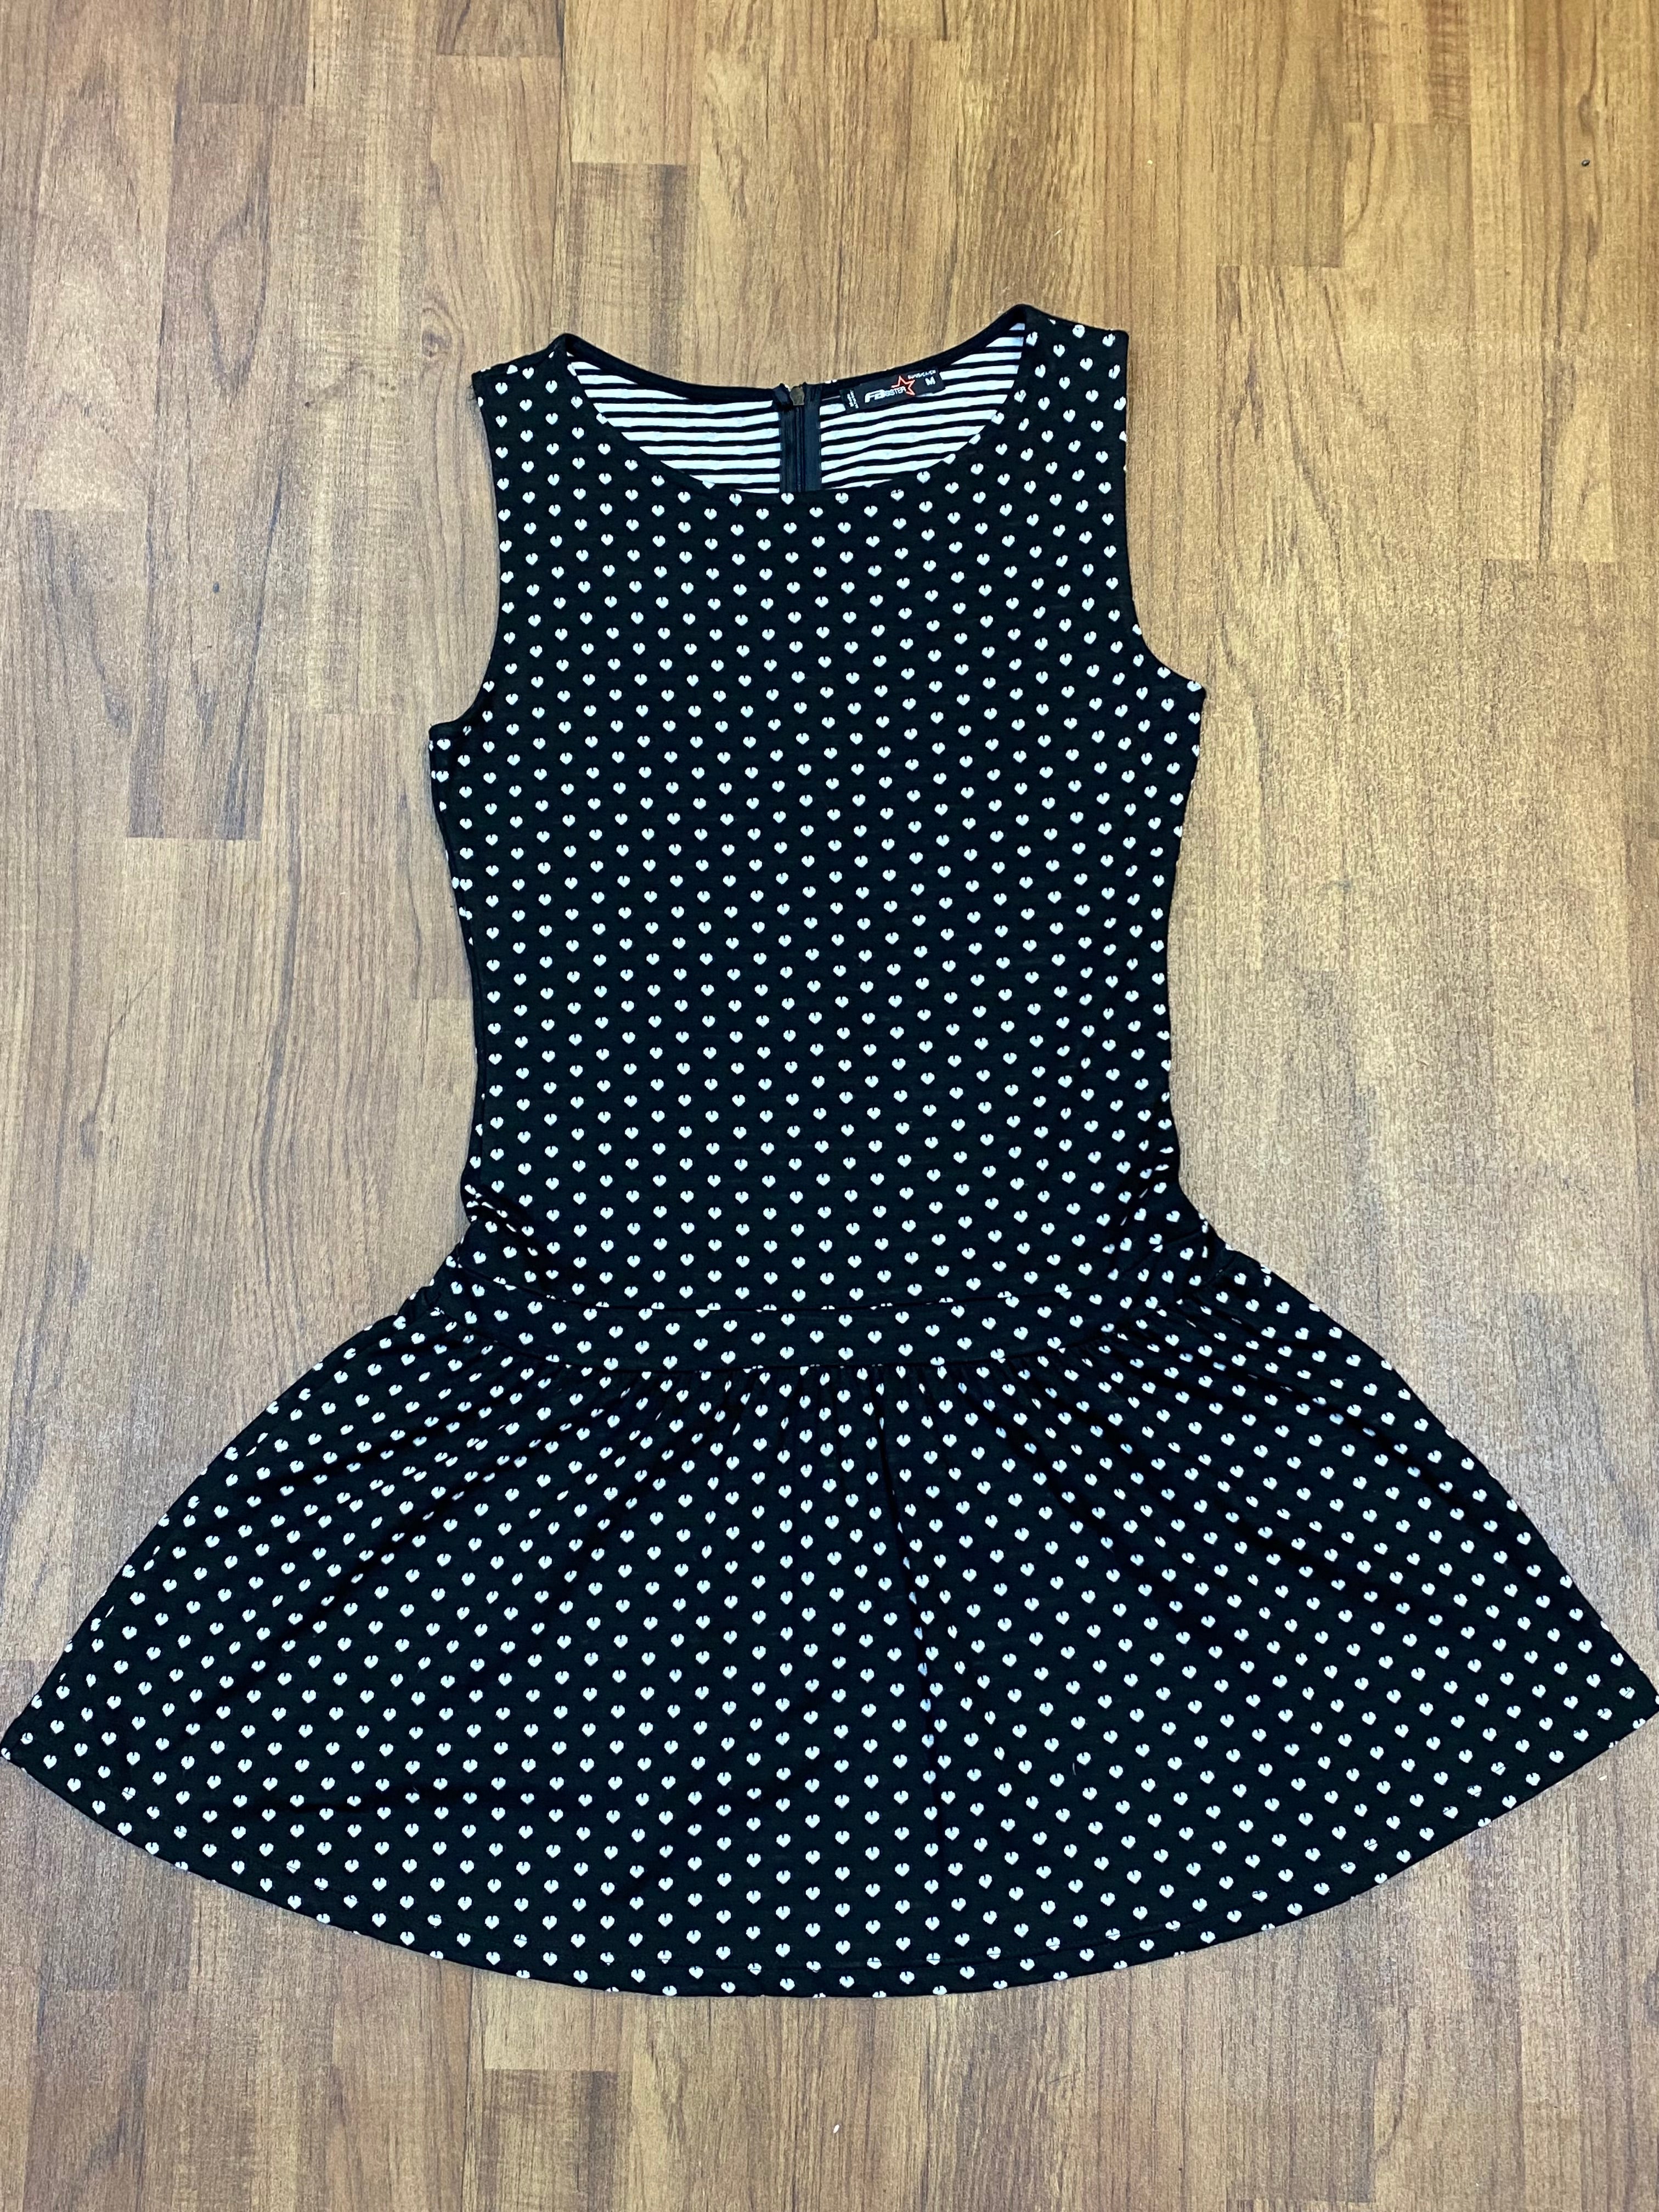 Schwarzes  Kleid mit Pünktchen 40er Jahre Stil, Vintage tiefe Taille Gr.M